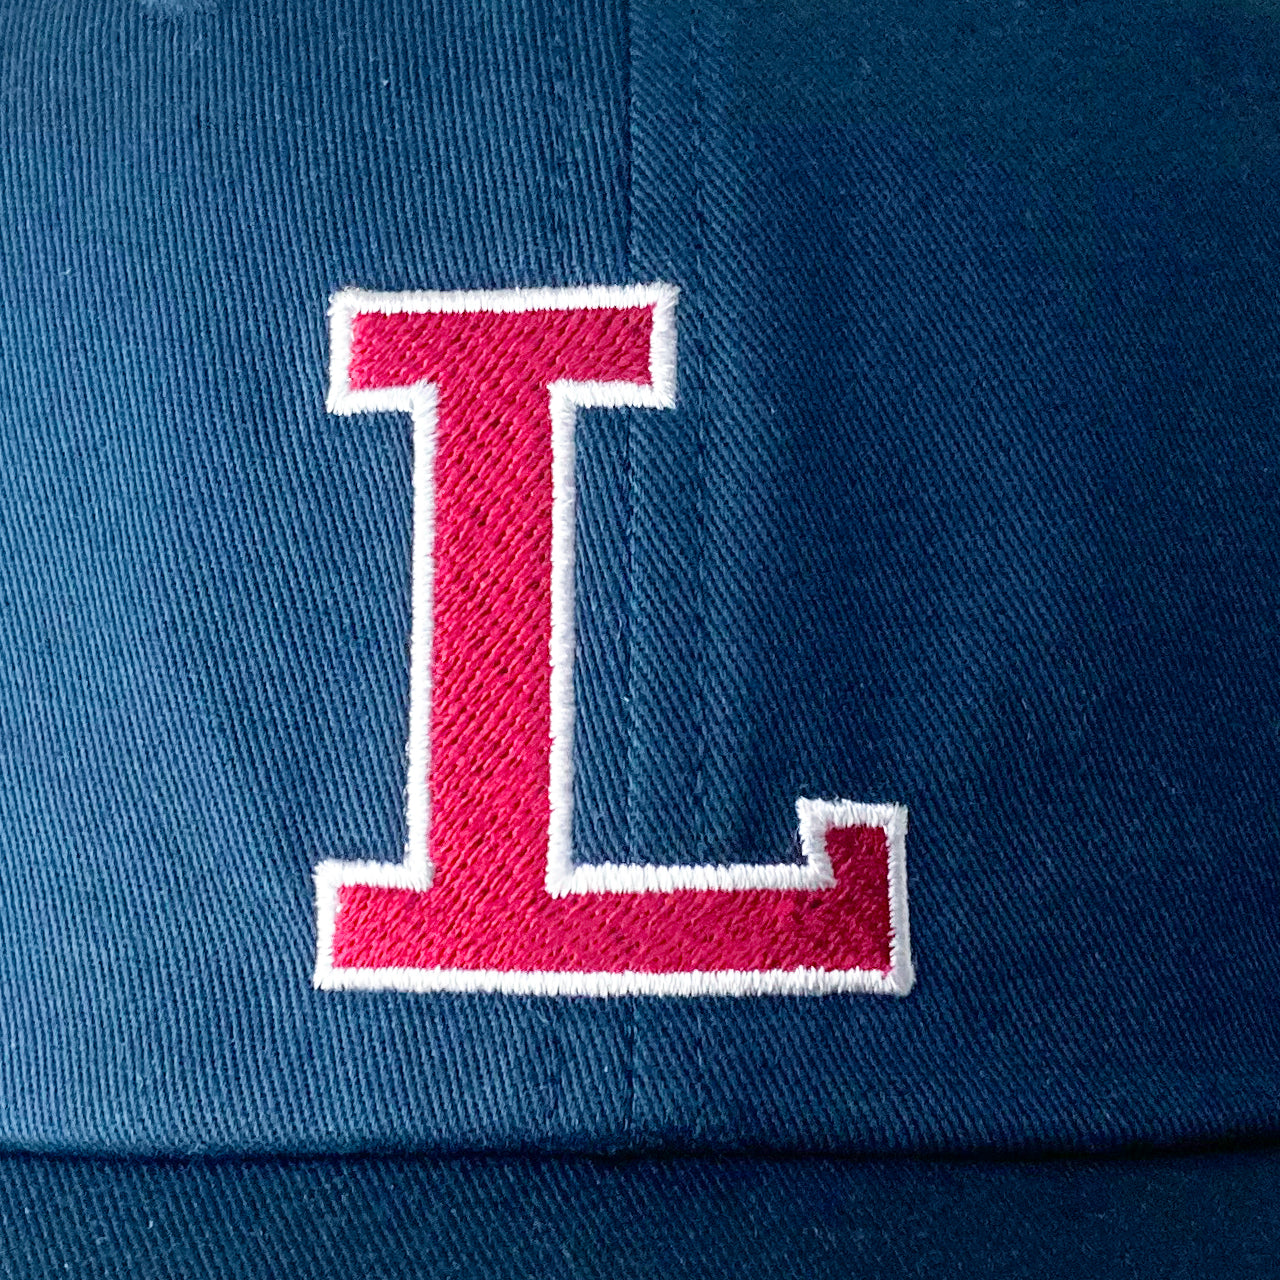 【NEW】LACOSTE/LACOSTE L LOGO CAP/L-1251/￥7700